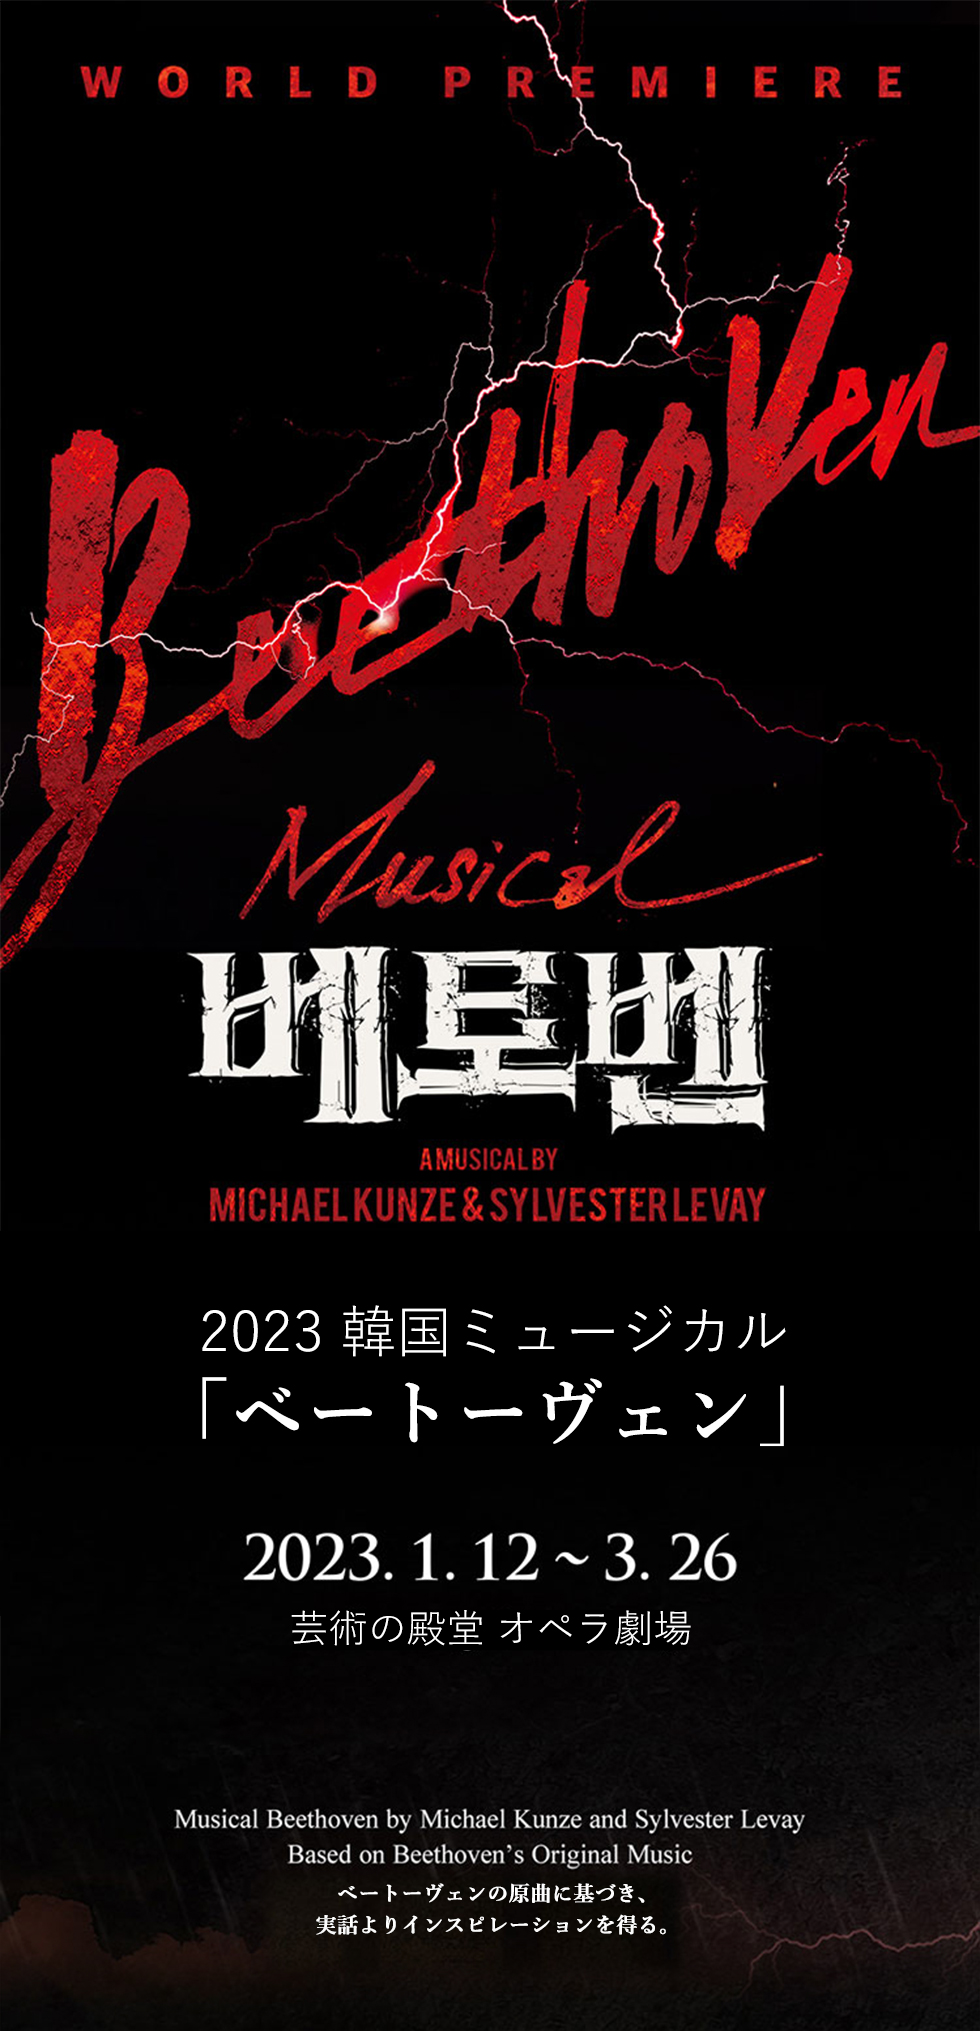 【日本公式】2023 韓国ミュージカル「ベートーヴェン」日本公式チケット (1階 R席)